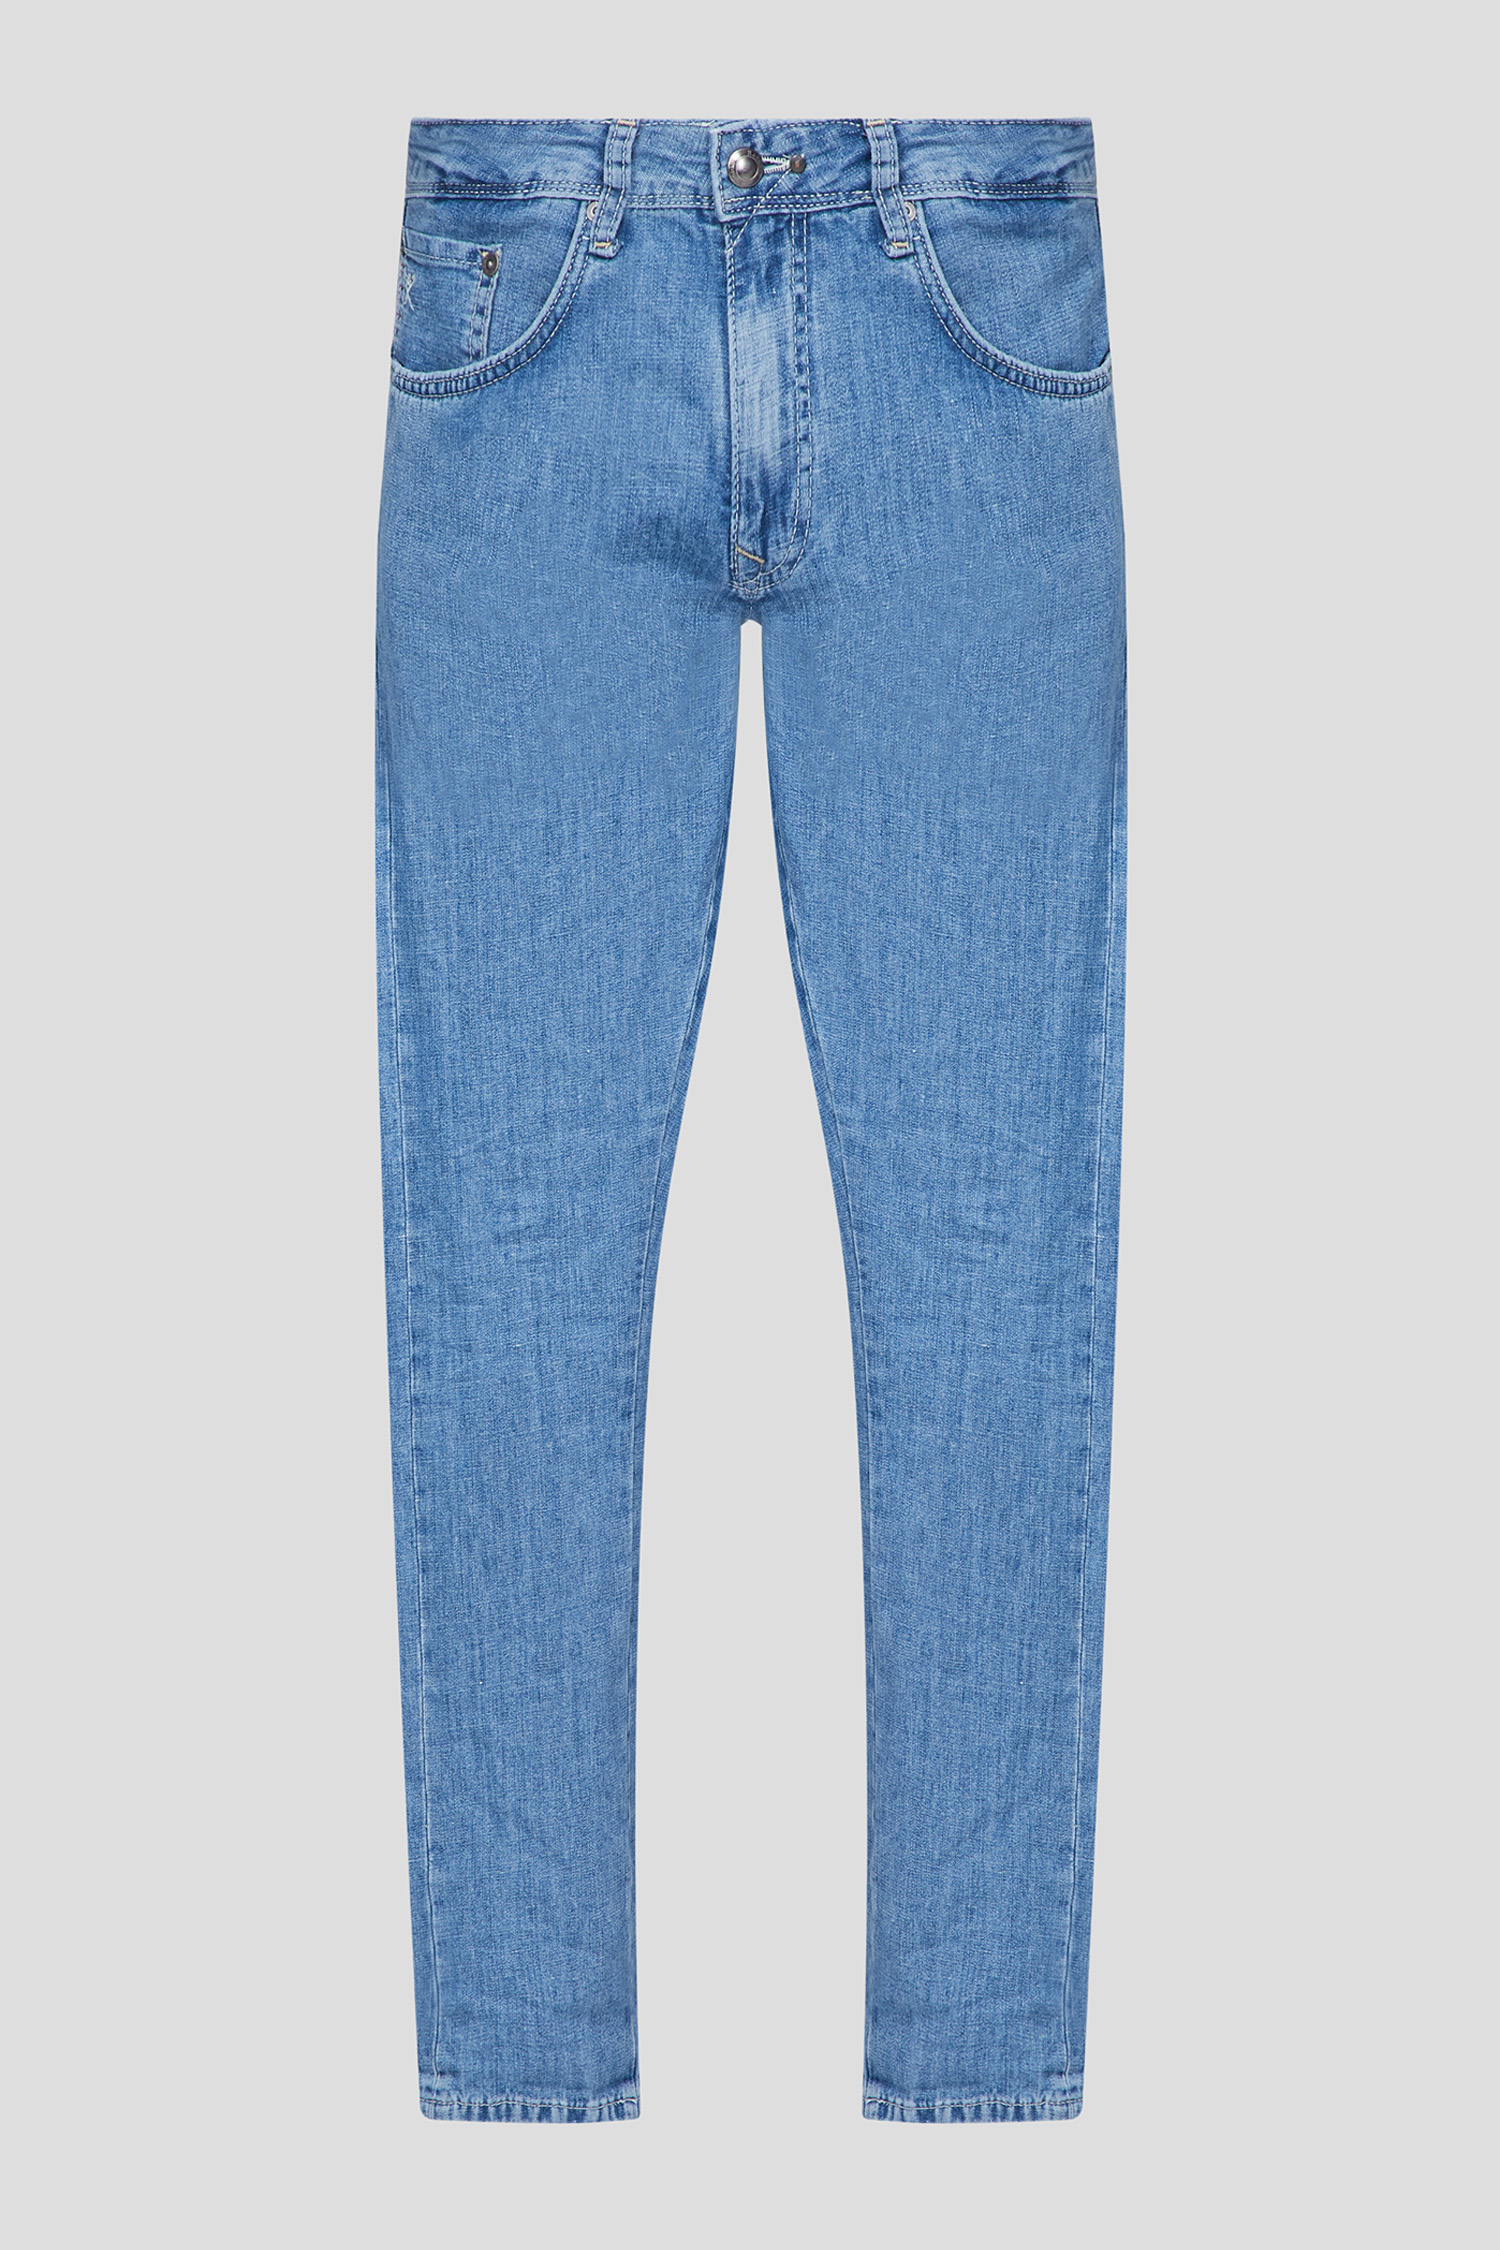 Мужские синие джинсы 1